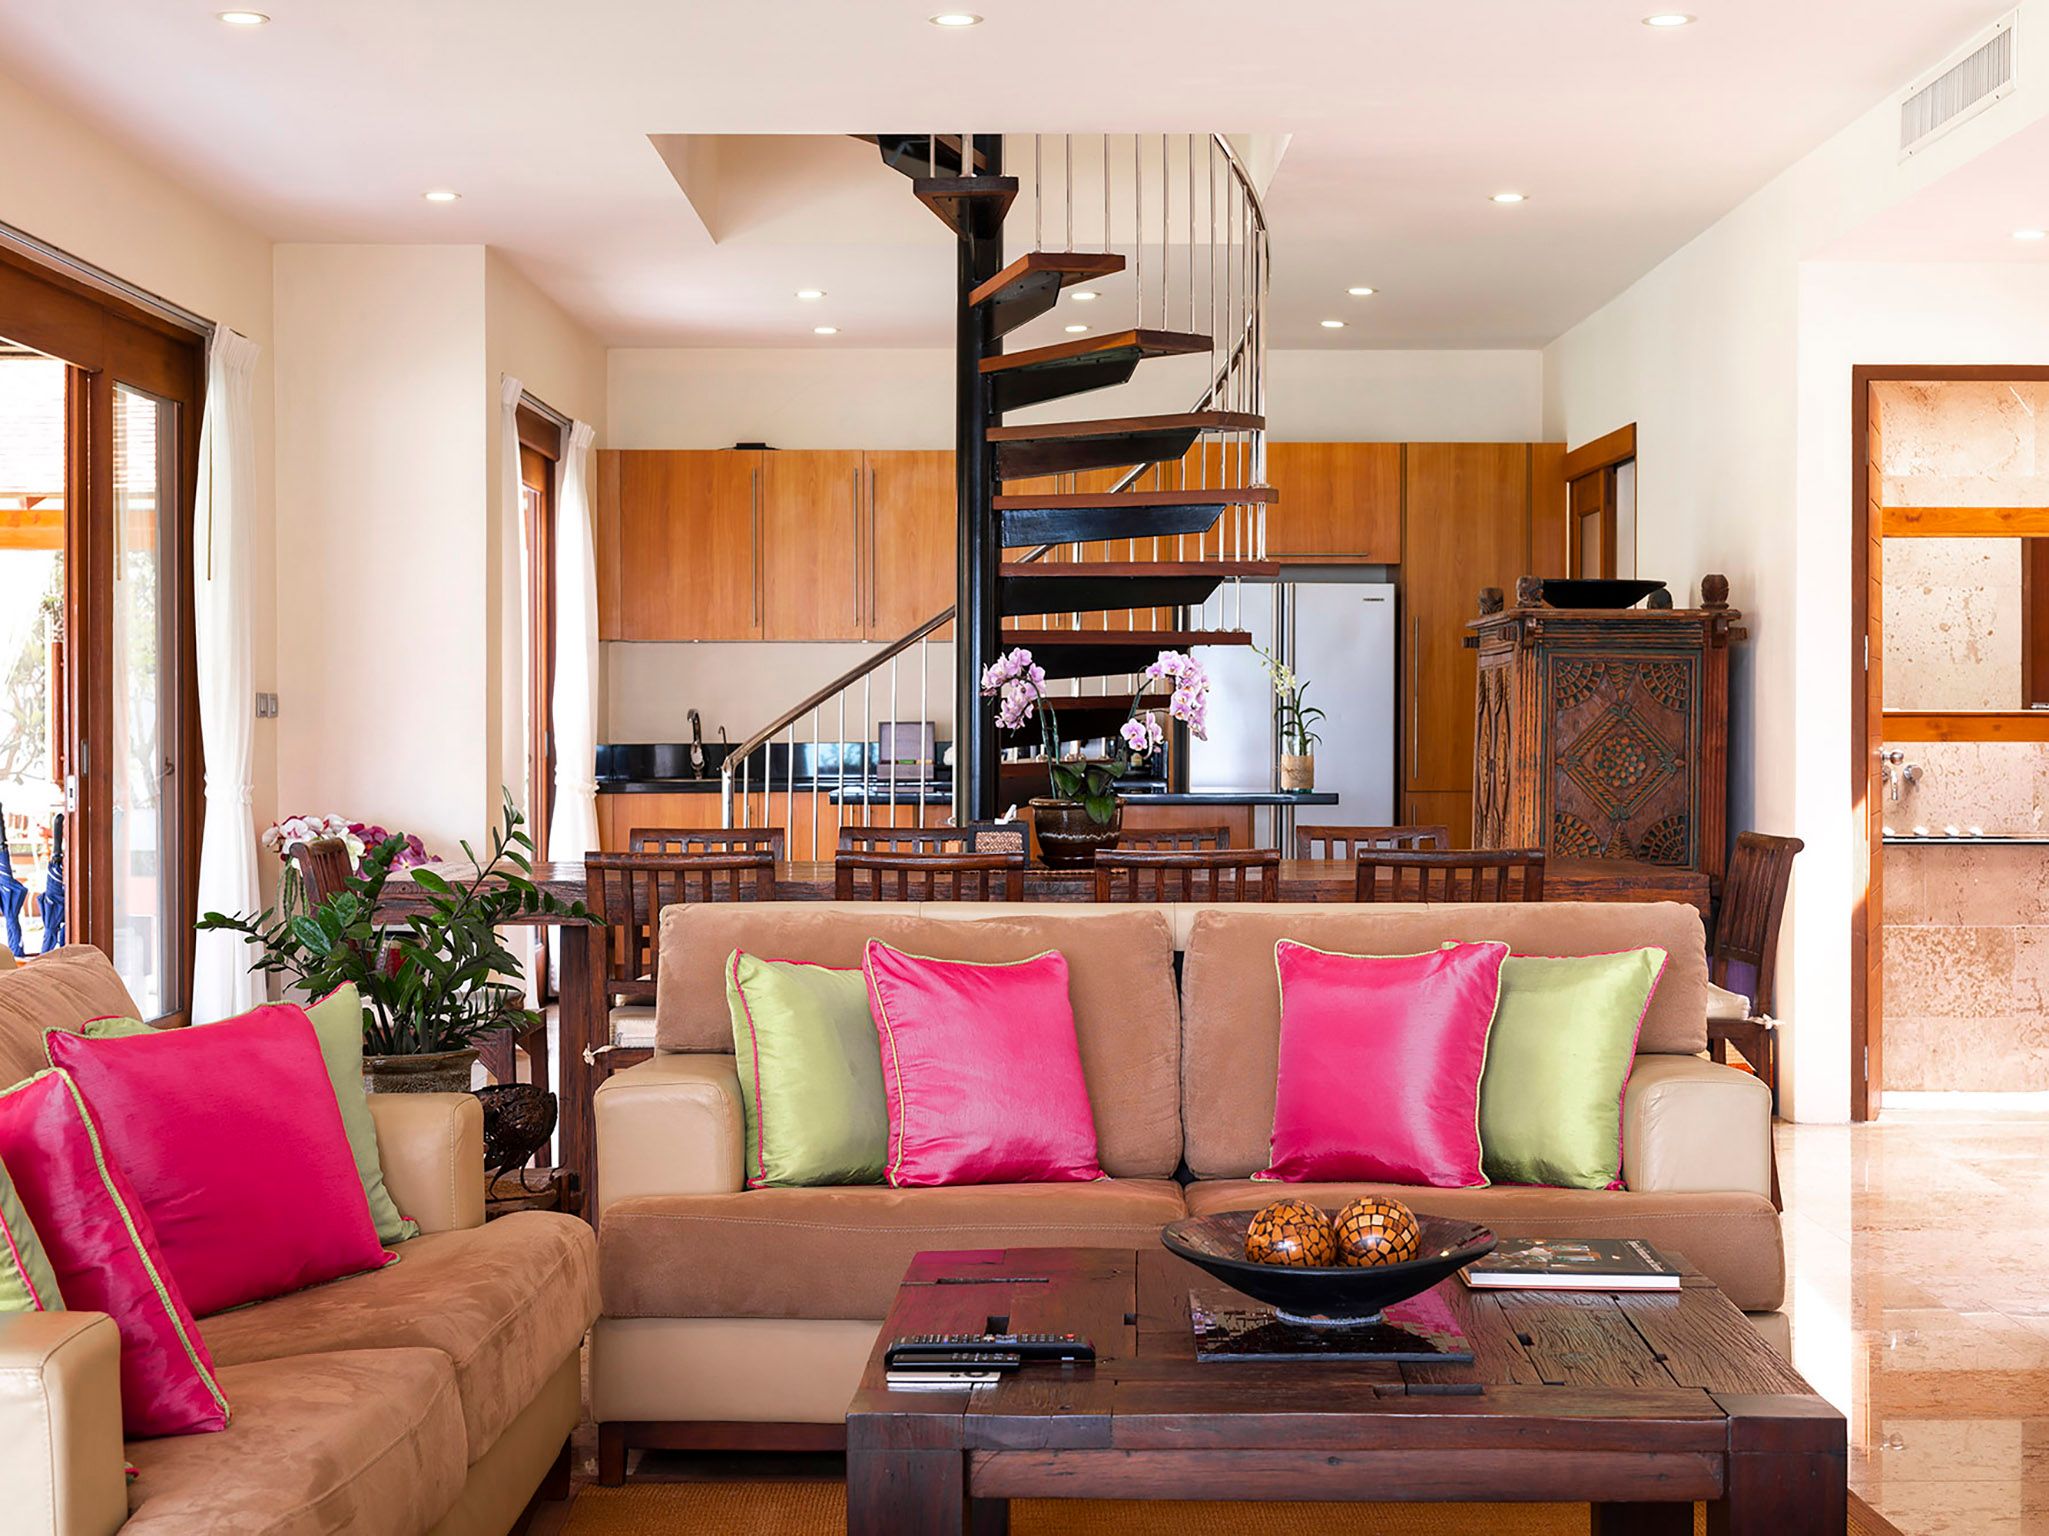 Tawantok Beach Villas - Villa 2 - Living room layout